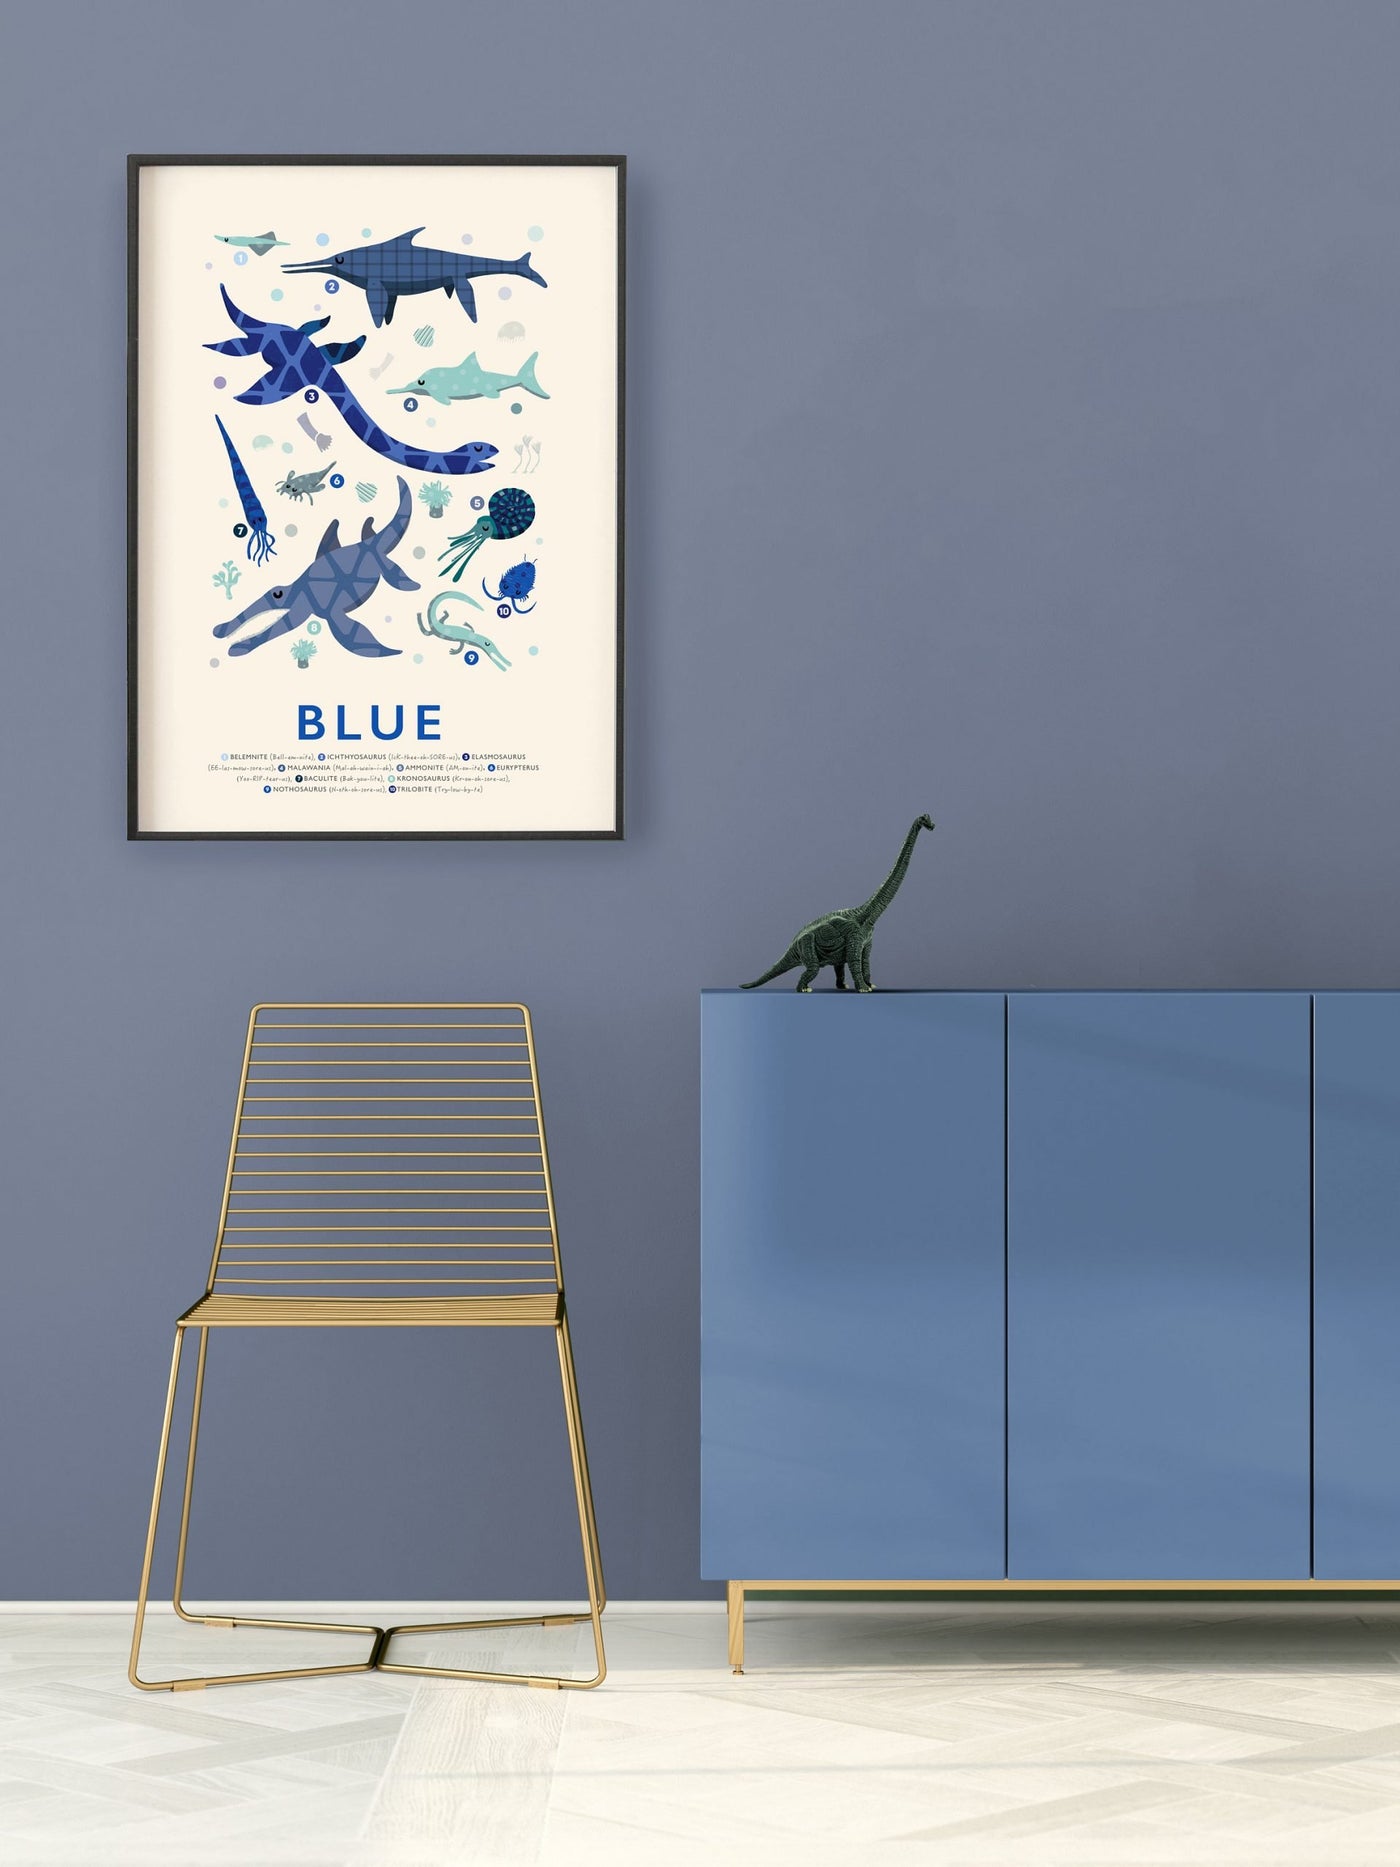 Blue Dinosaur Print - PaperPaintPixels